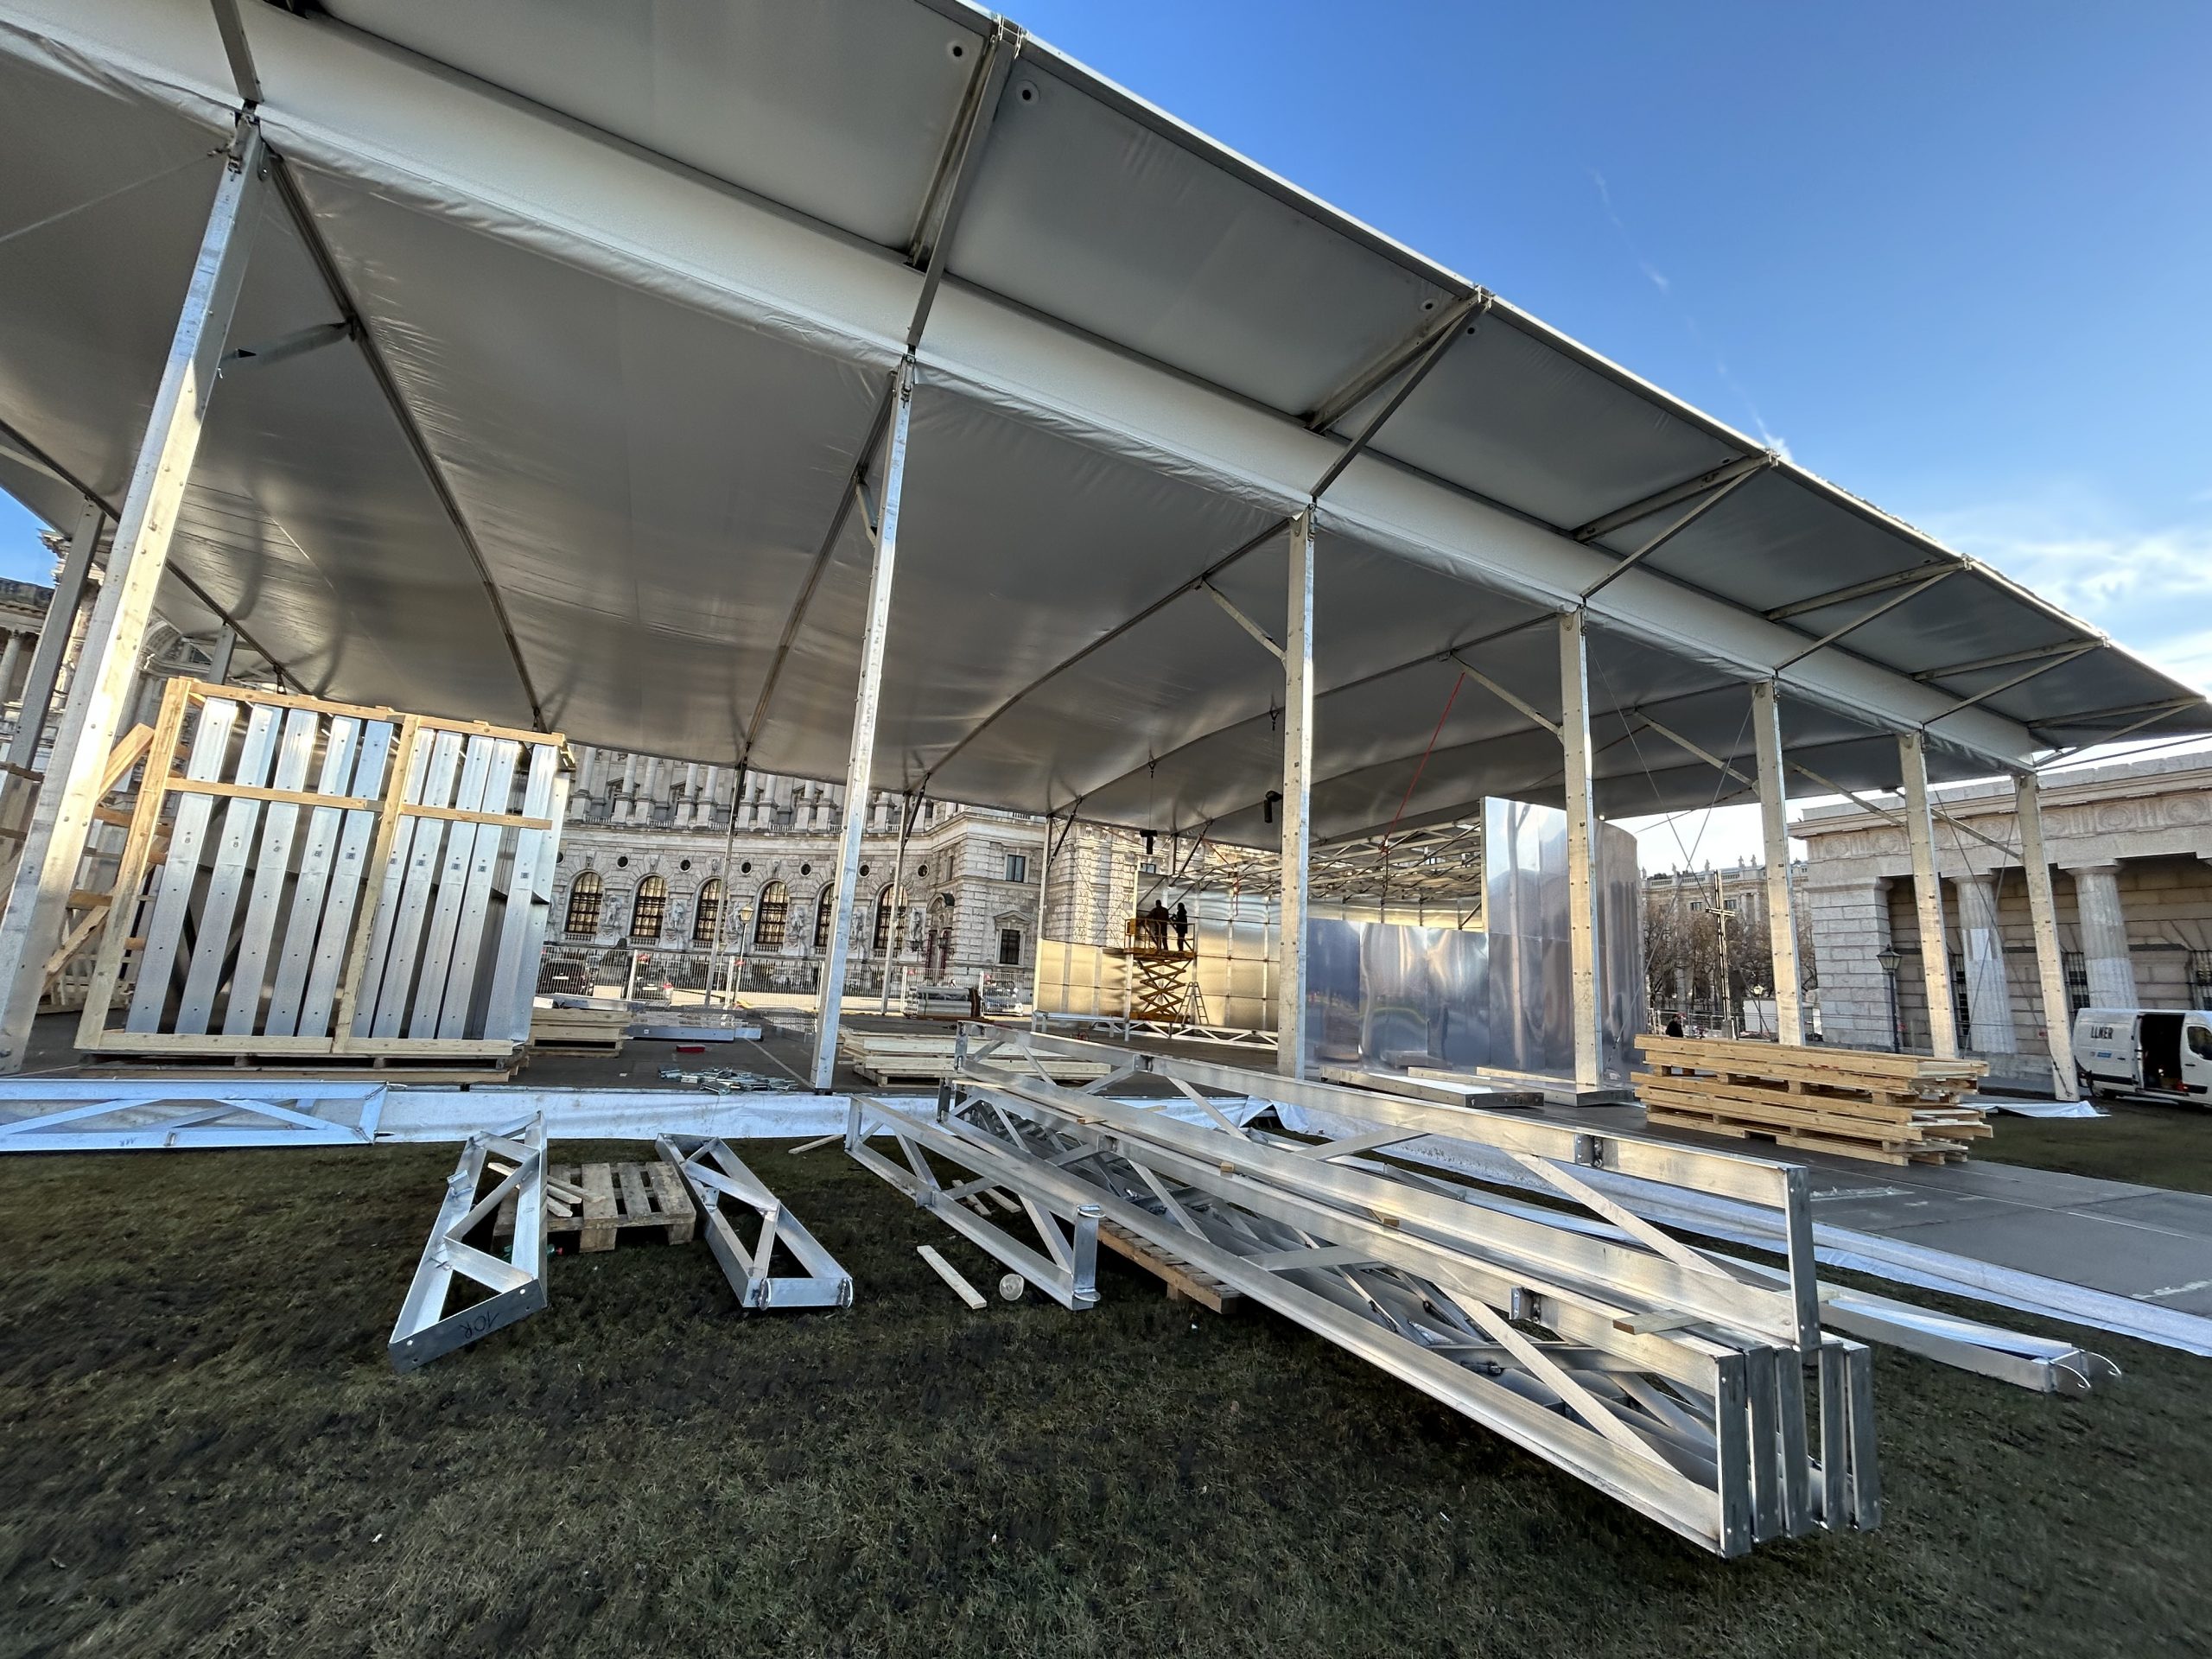 Der mobile Pavillon wird derzeit am Heldenplatz aufgebaut.